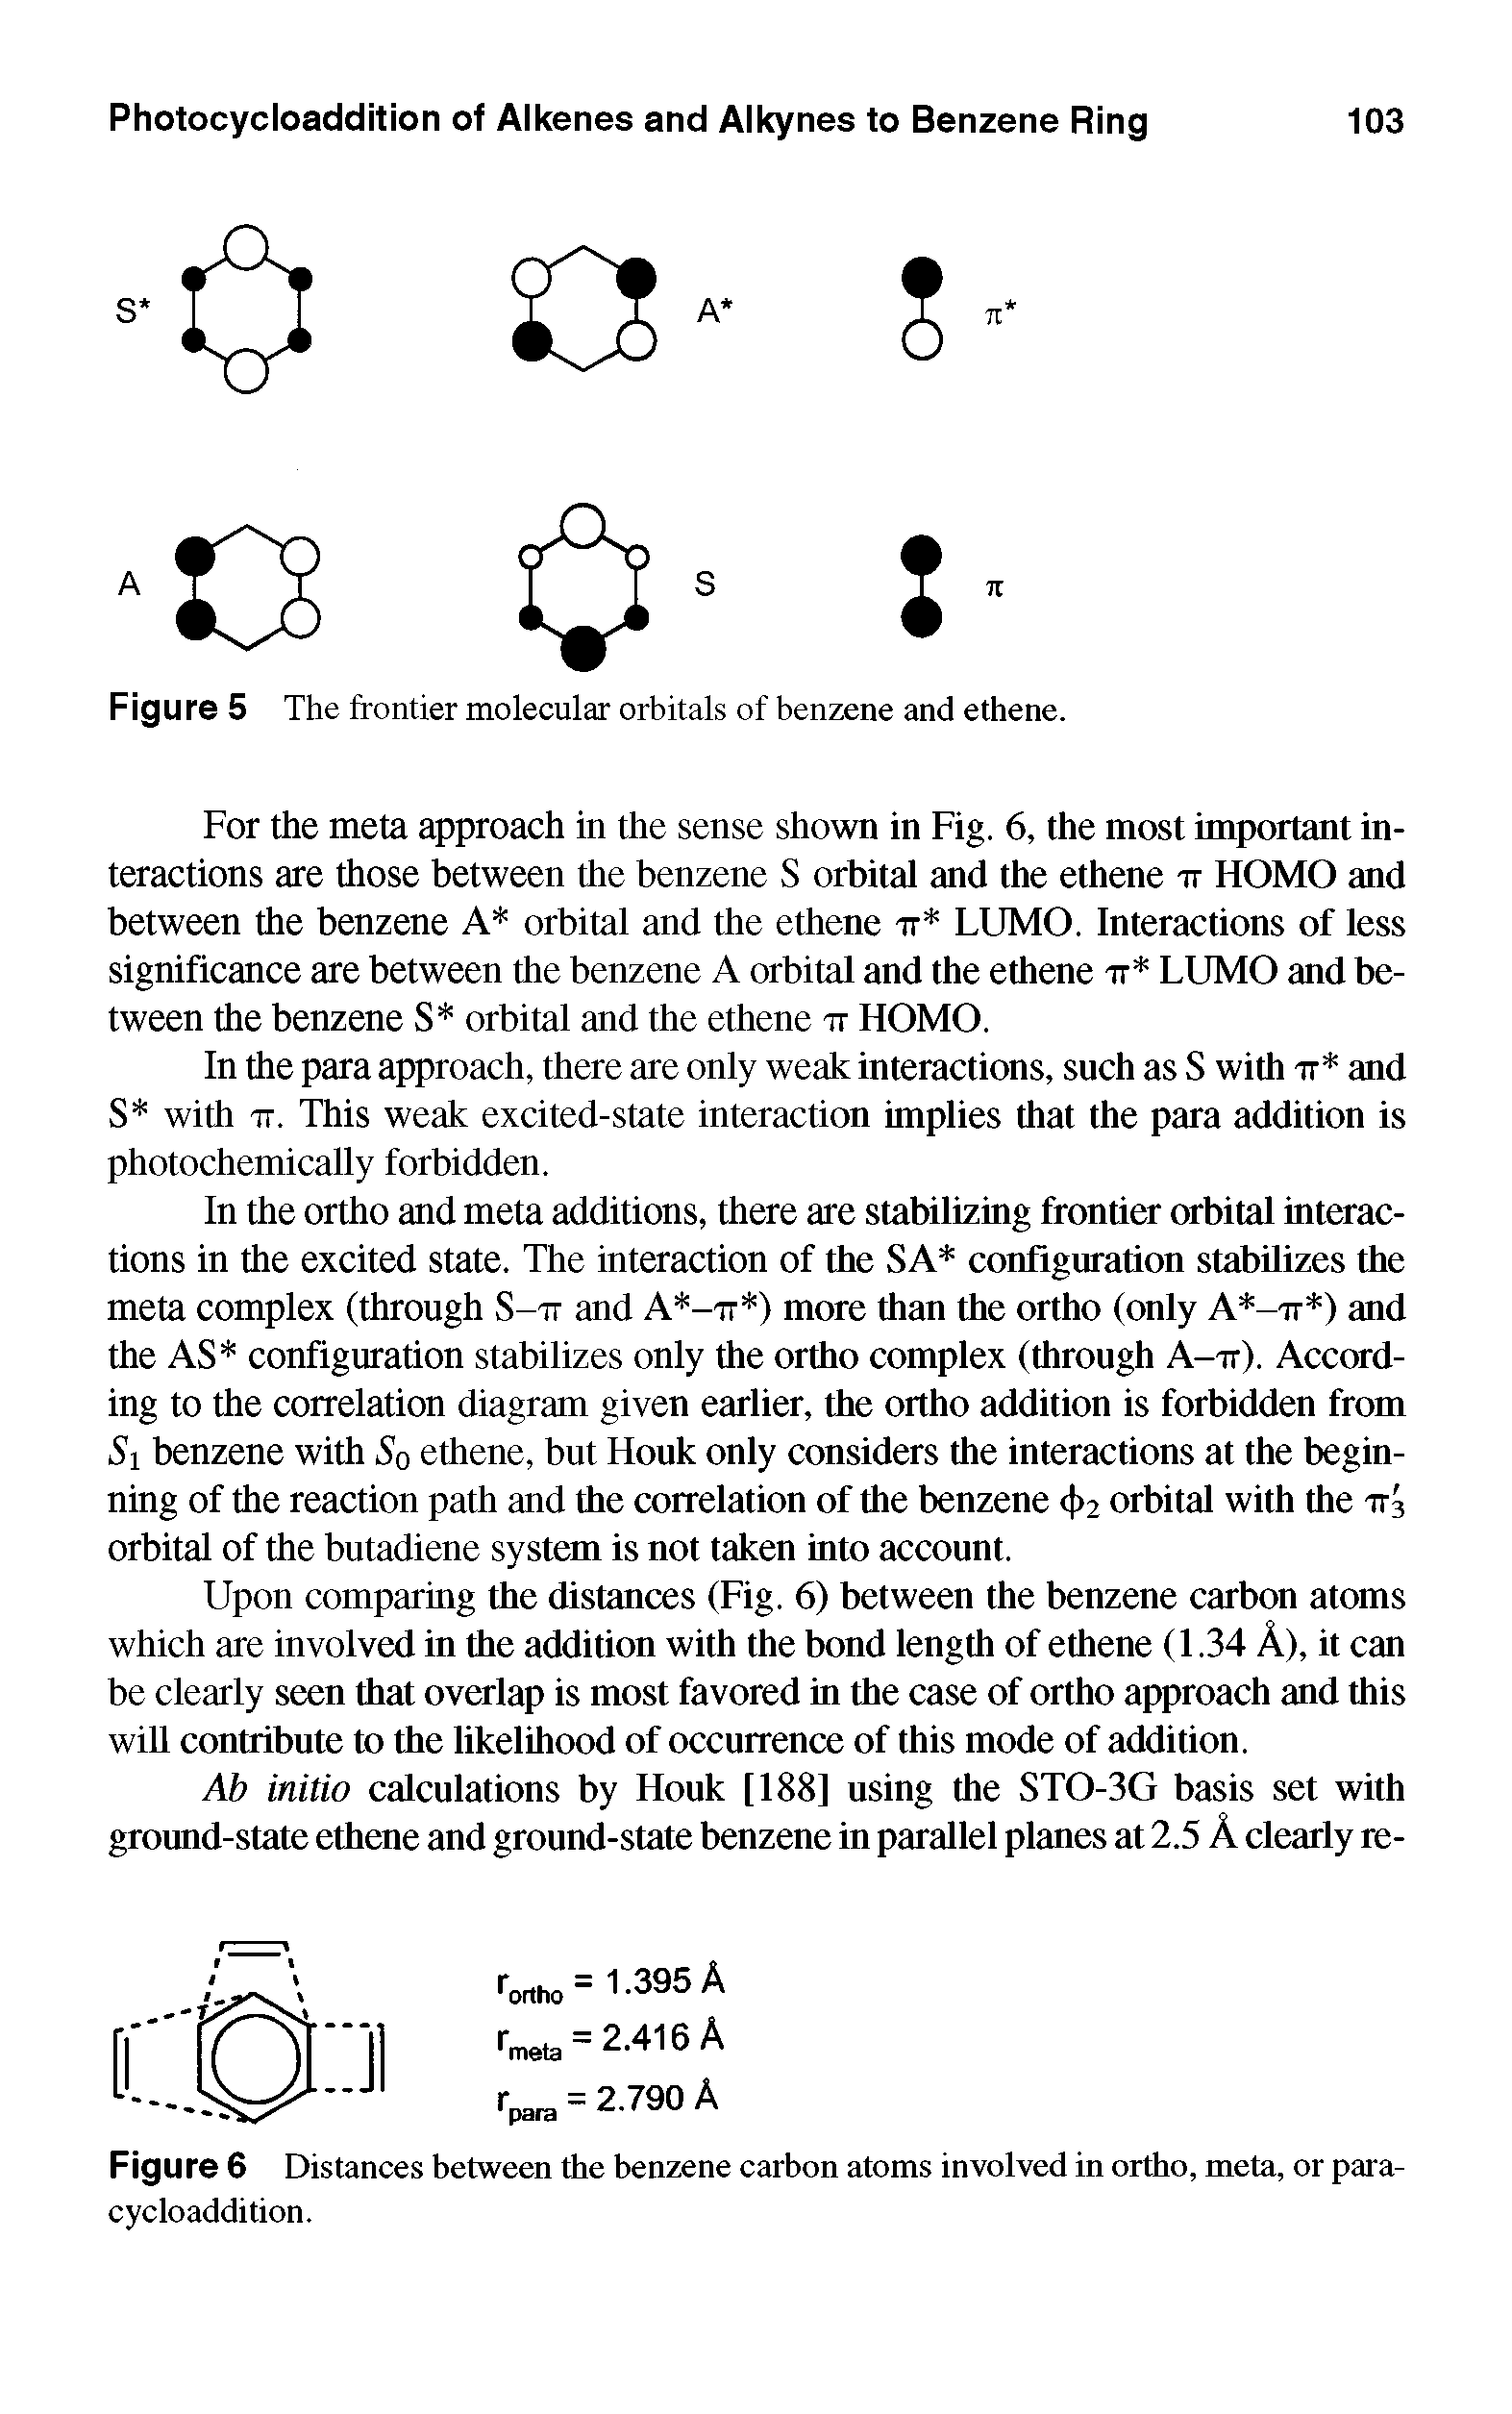 Figure 5 The frontier molecular orbitals of benzene and ethene.